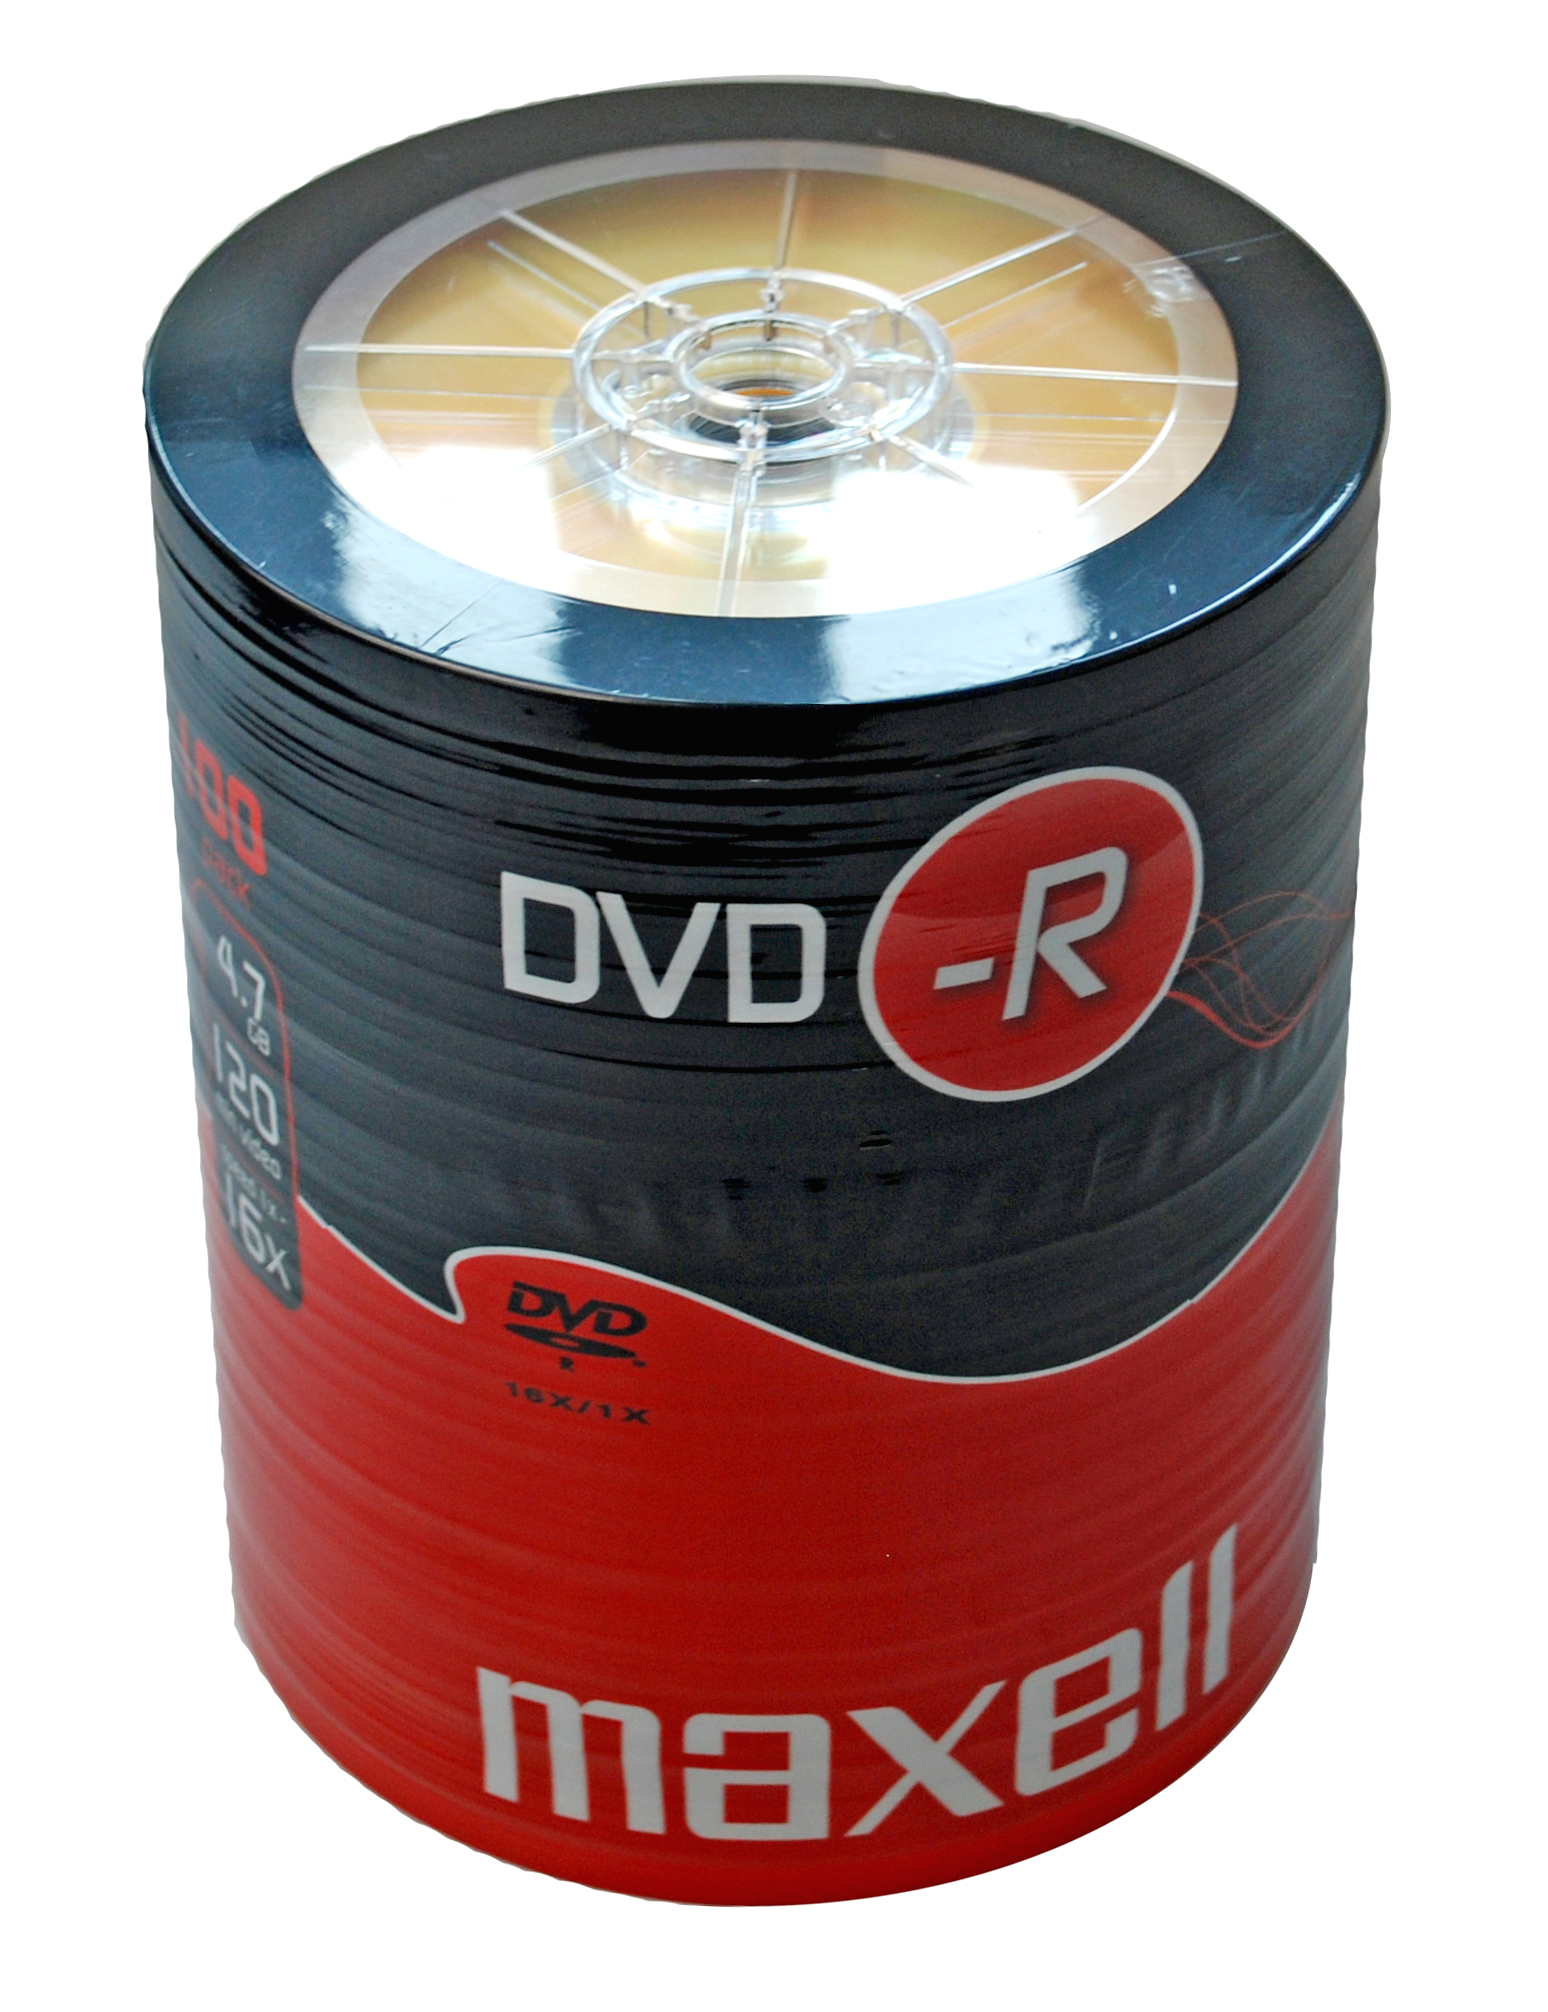 Maxell DVD-R. DVD-R. RW 100. DVD+R 4,7 GB 16x Bulk/100. Dvd r 100